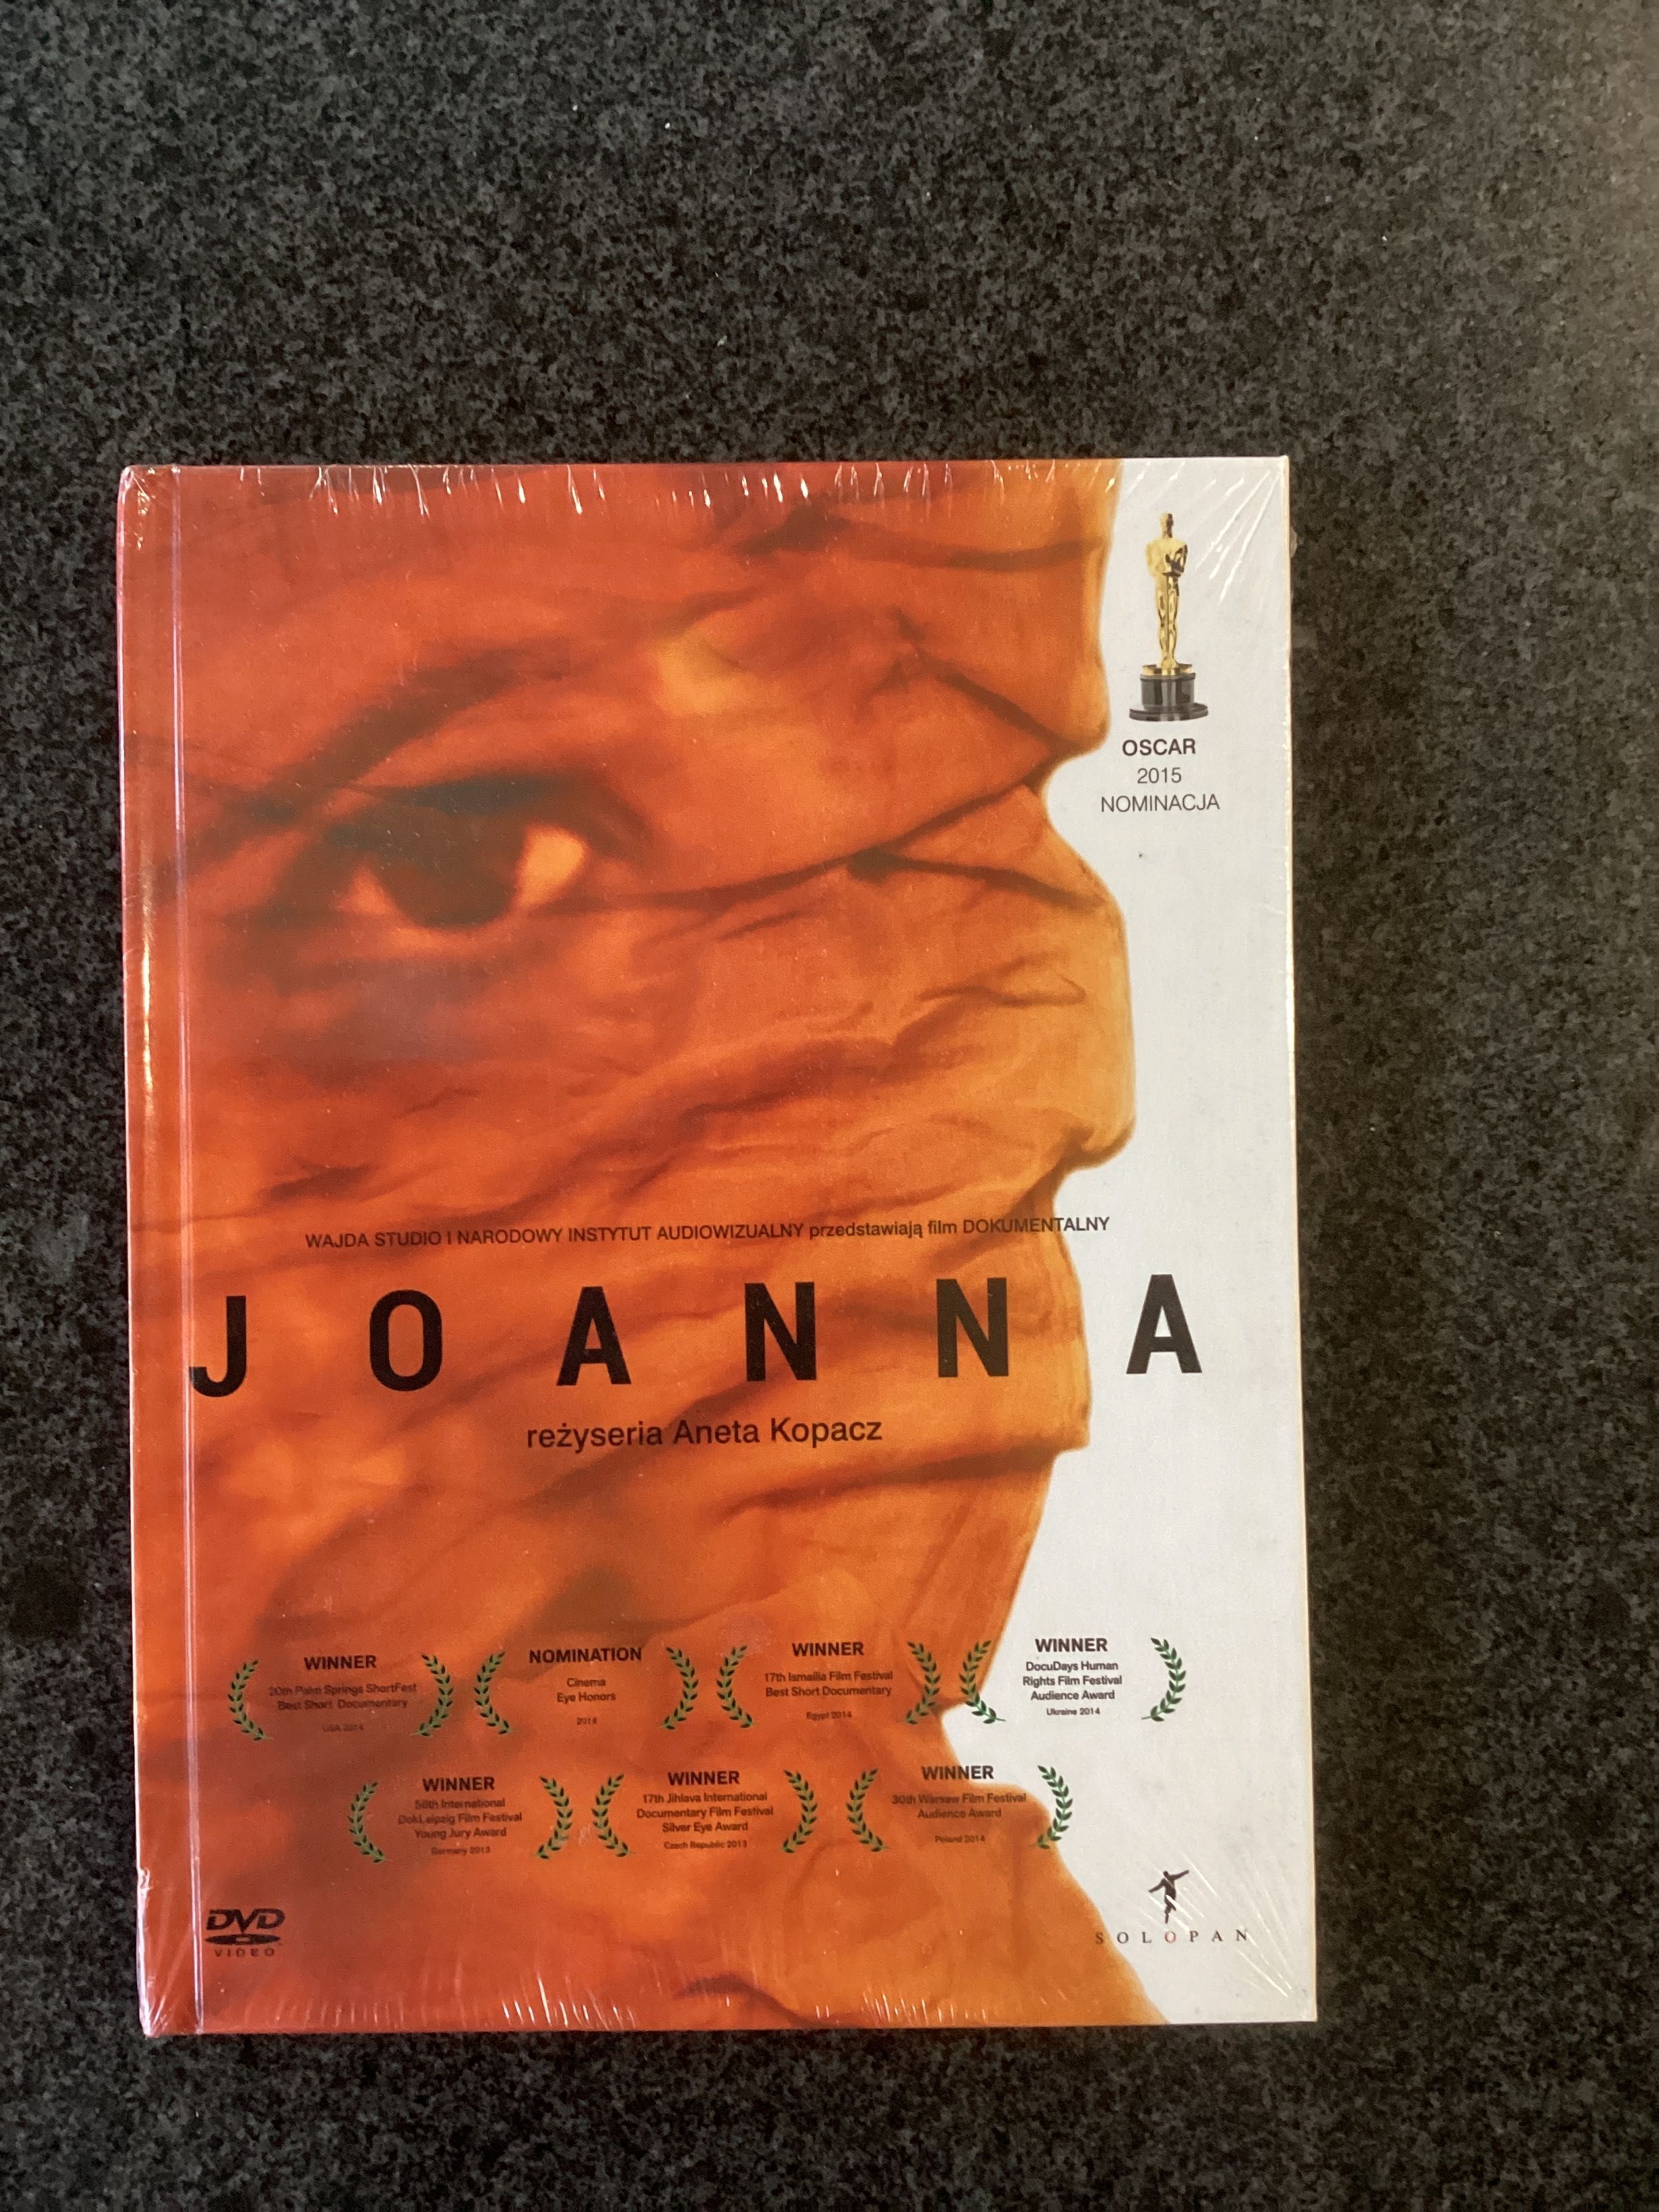 Płyta DVD, film „Joanna” reżyserii Anety Kopacz. Nominowany do Oscara